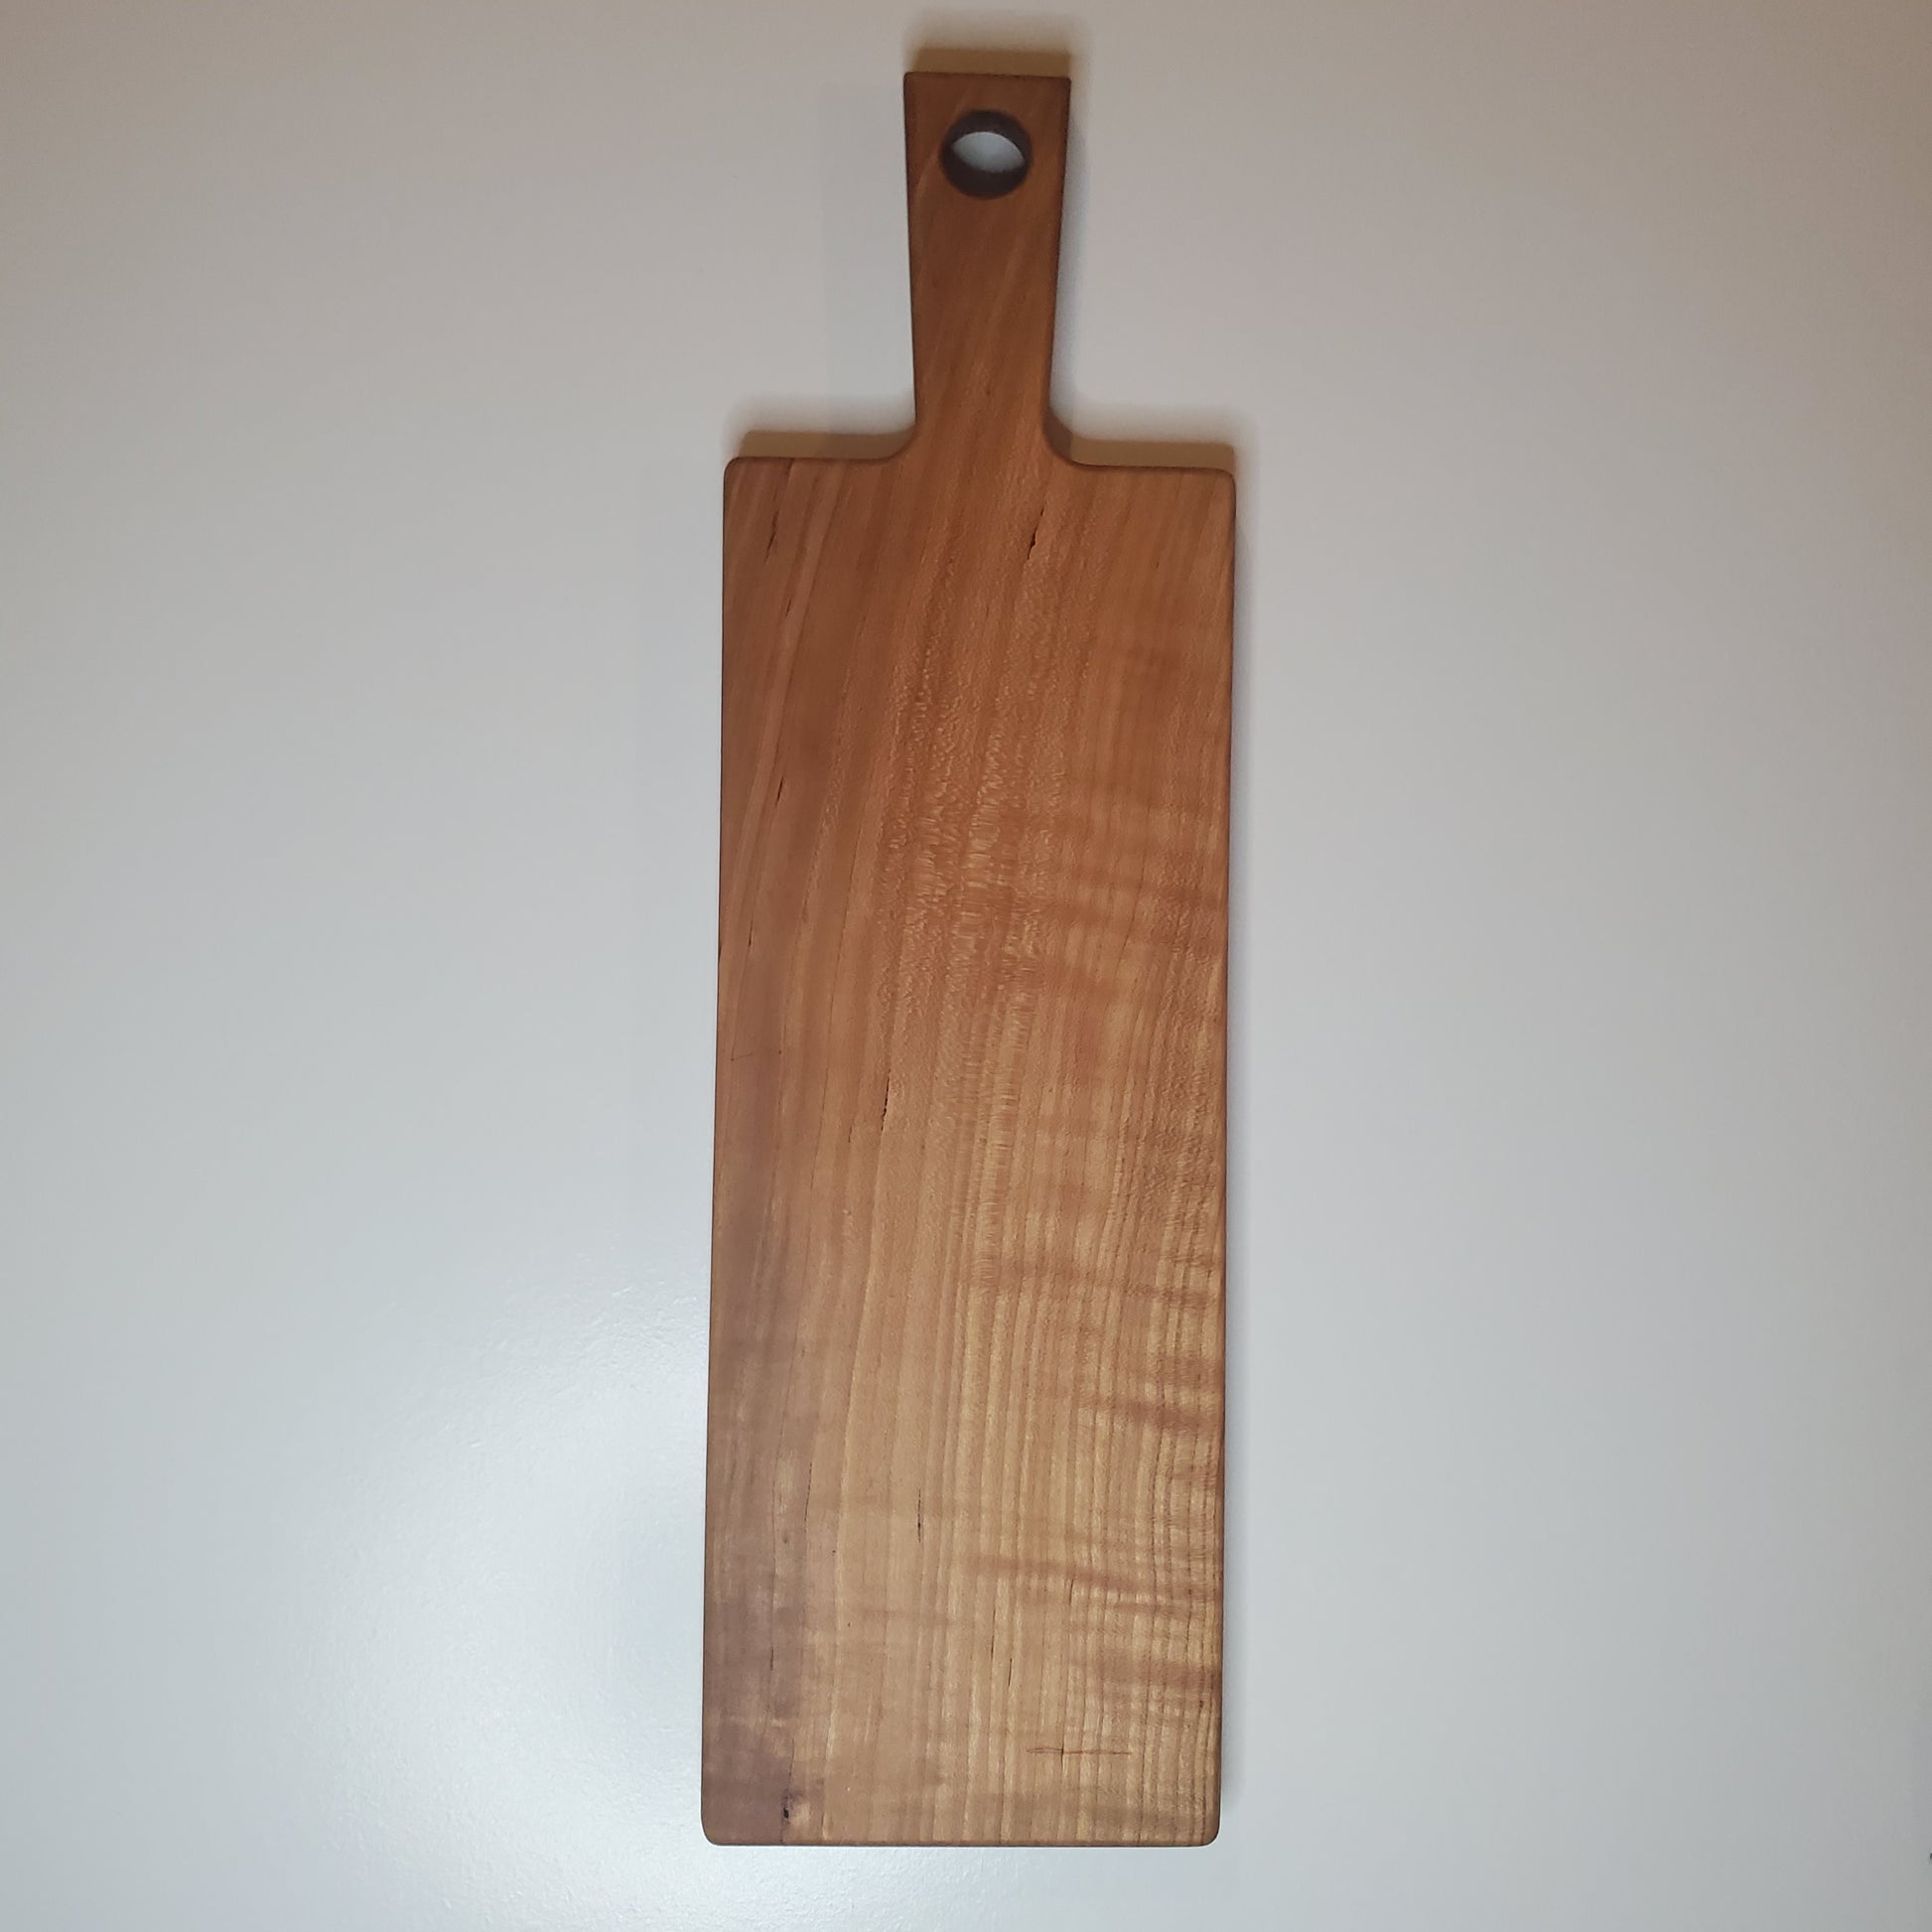 Handmade Wooden Bread Board. Two Levels